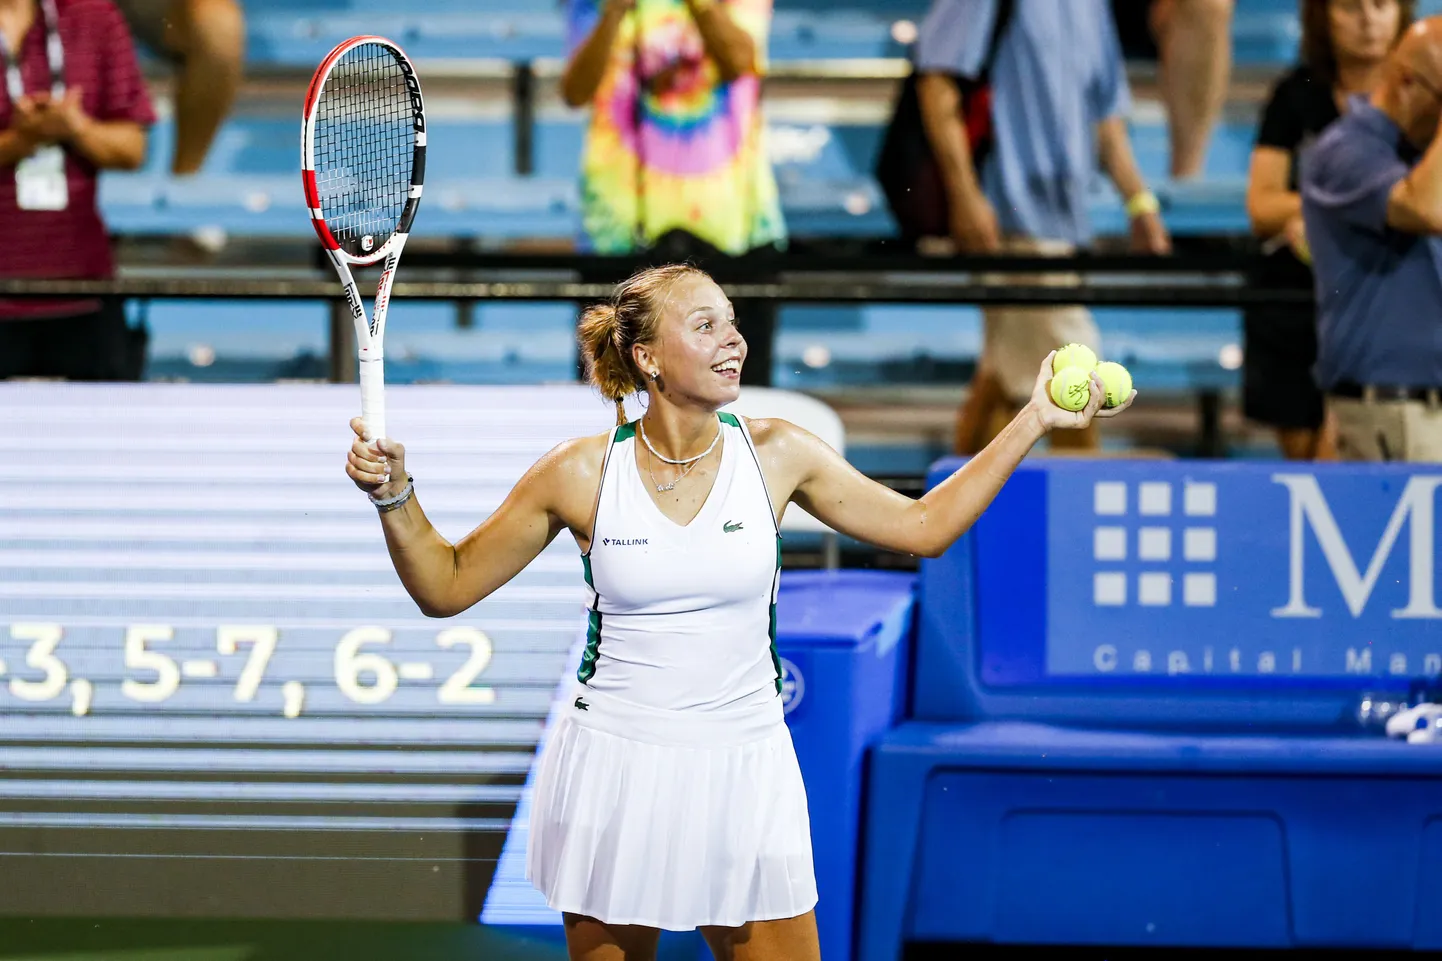 Первая ракетка Эстонии Анетт Контавейт вышла в полуфинал турнира категории WTA 250 в Кливленде (США), обыграв теннисистку из Чехии Катерину Синякову.